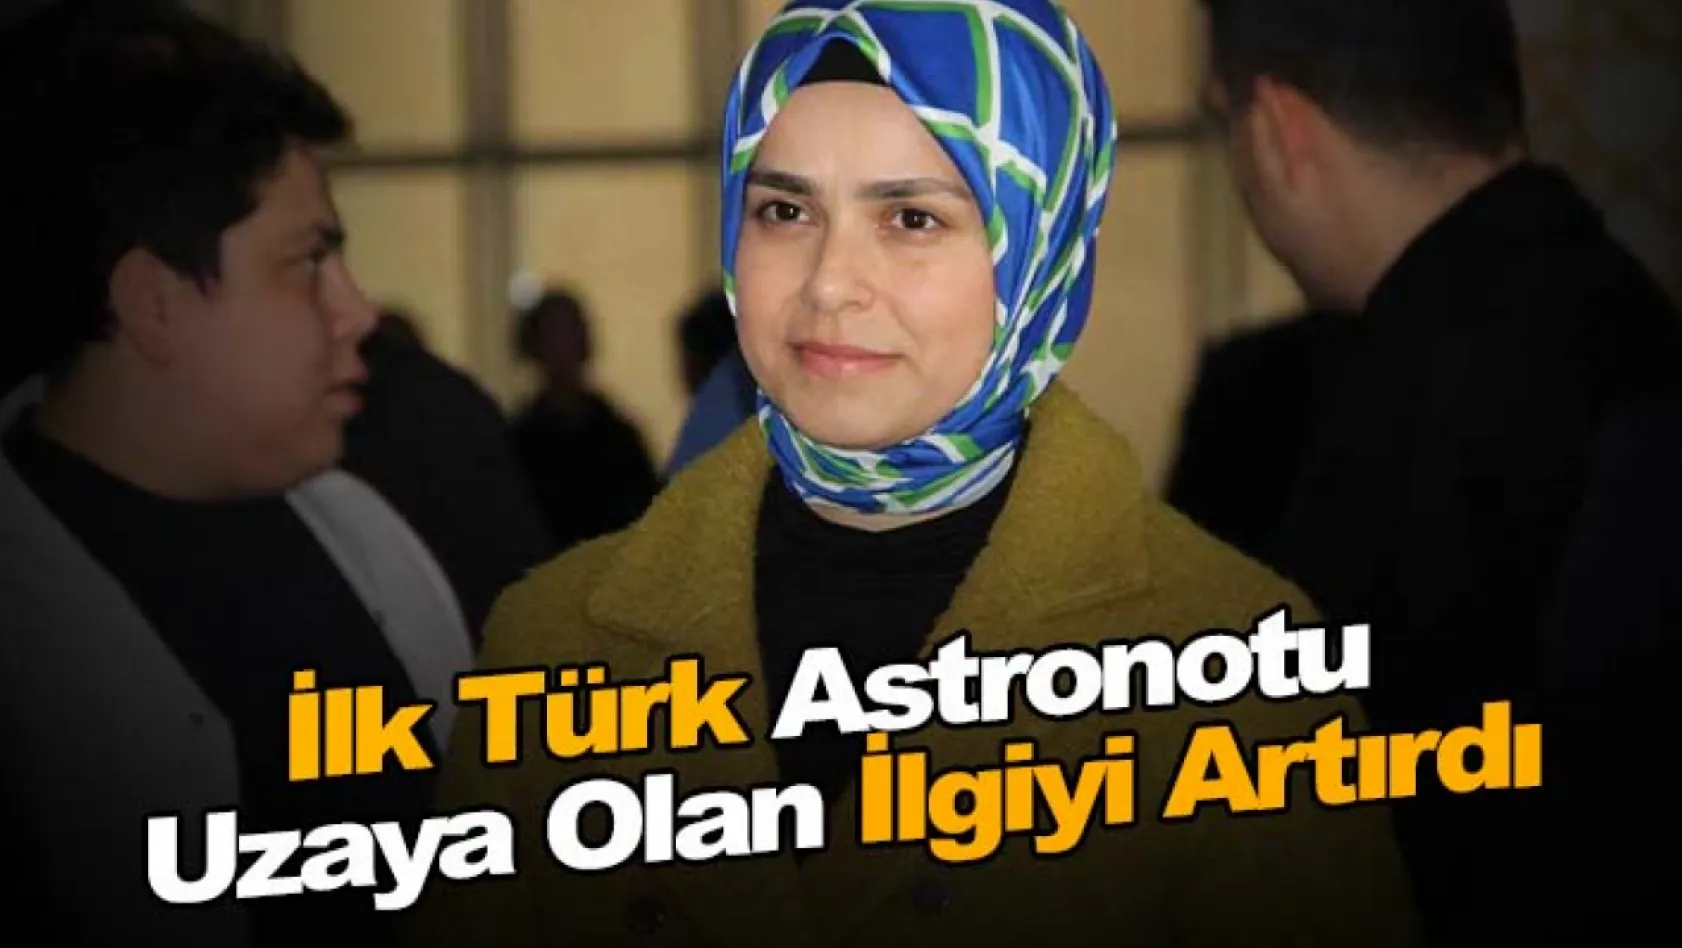 İlk Türk astronotu uzaya olan ilgiyi artırdı